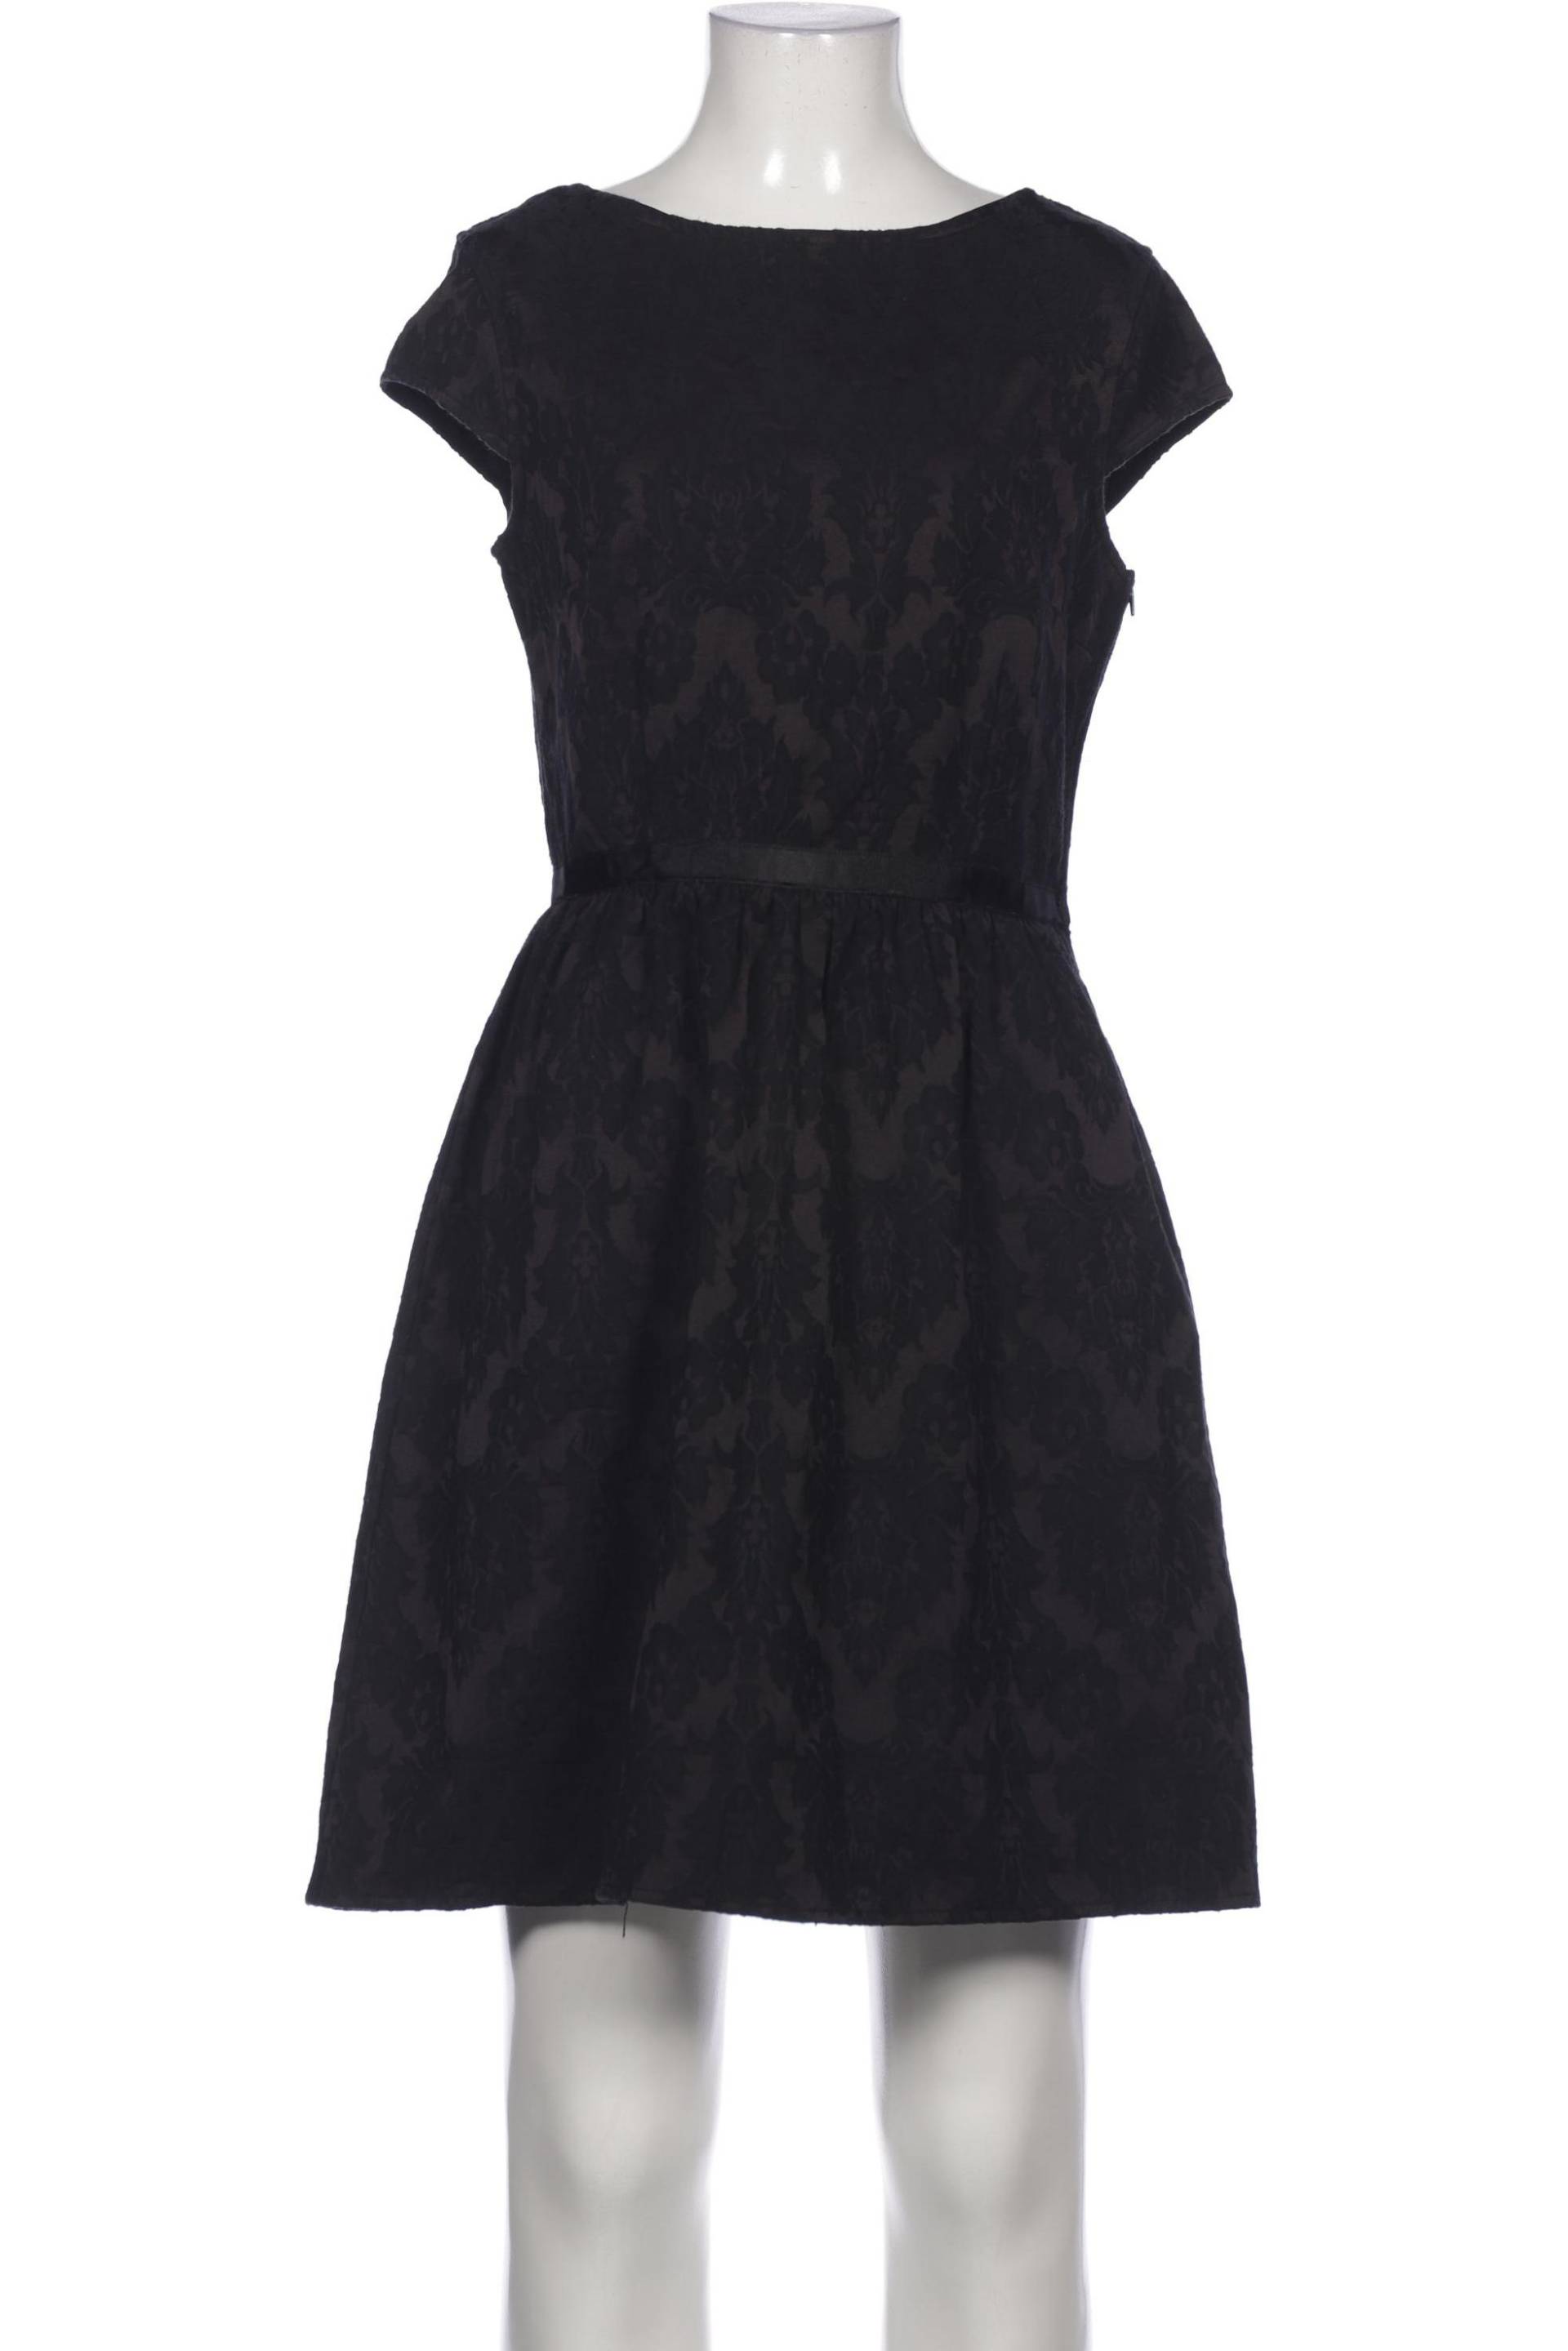 NAF NAF Damen Kleid, schwarz, Gr. 38 von Naf Naf